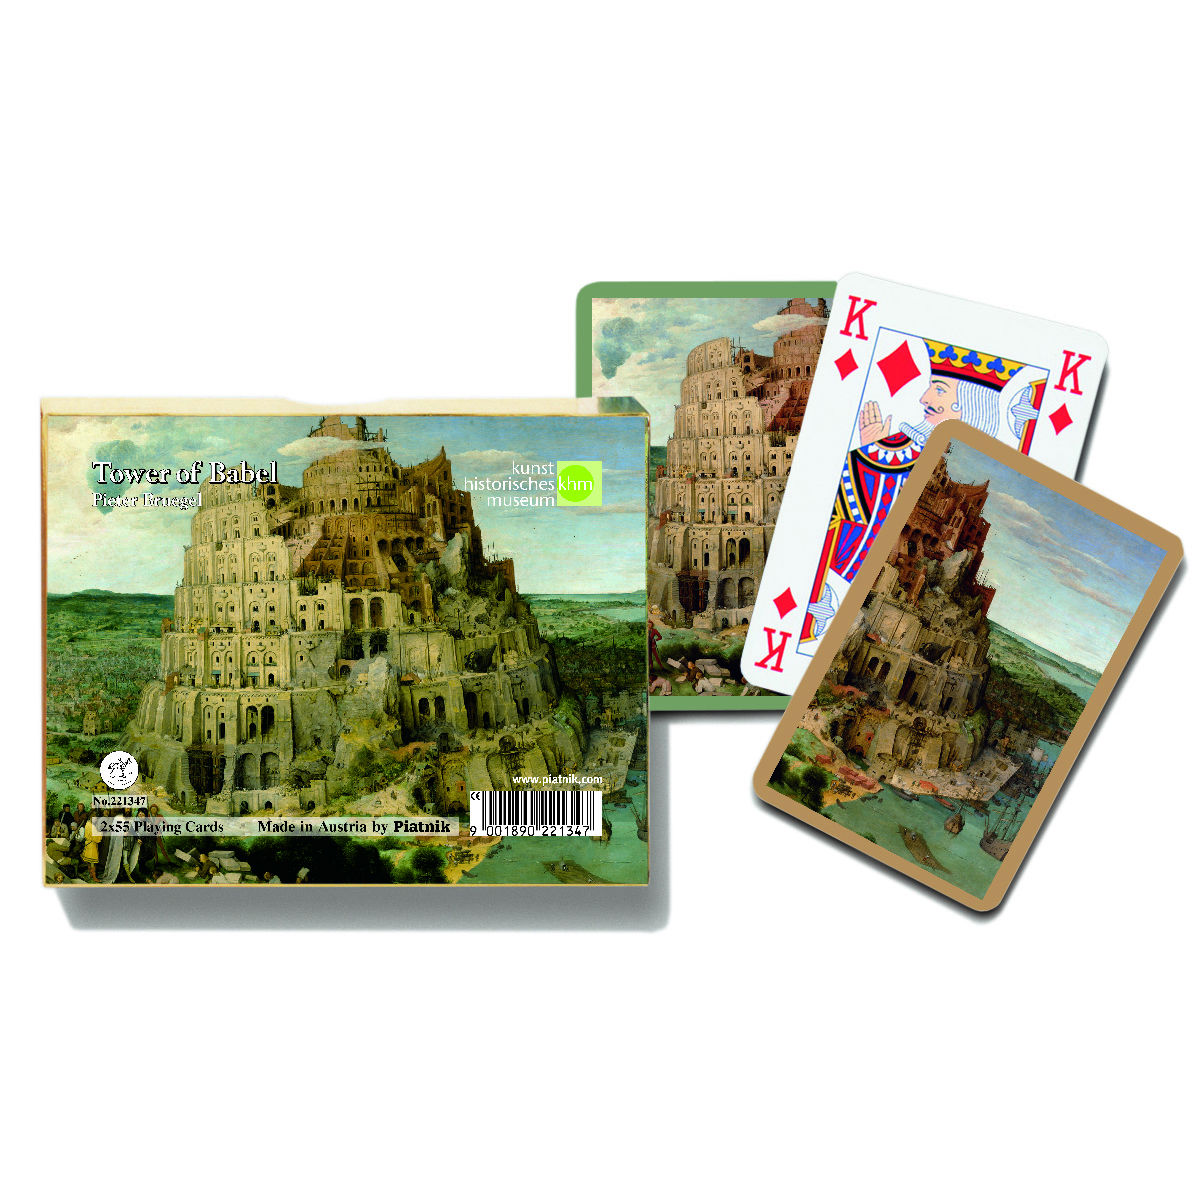 קלפים ברויגל - מגדל בבל.